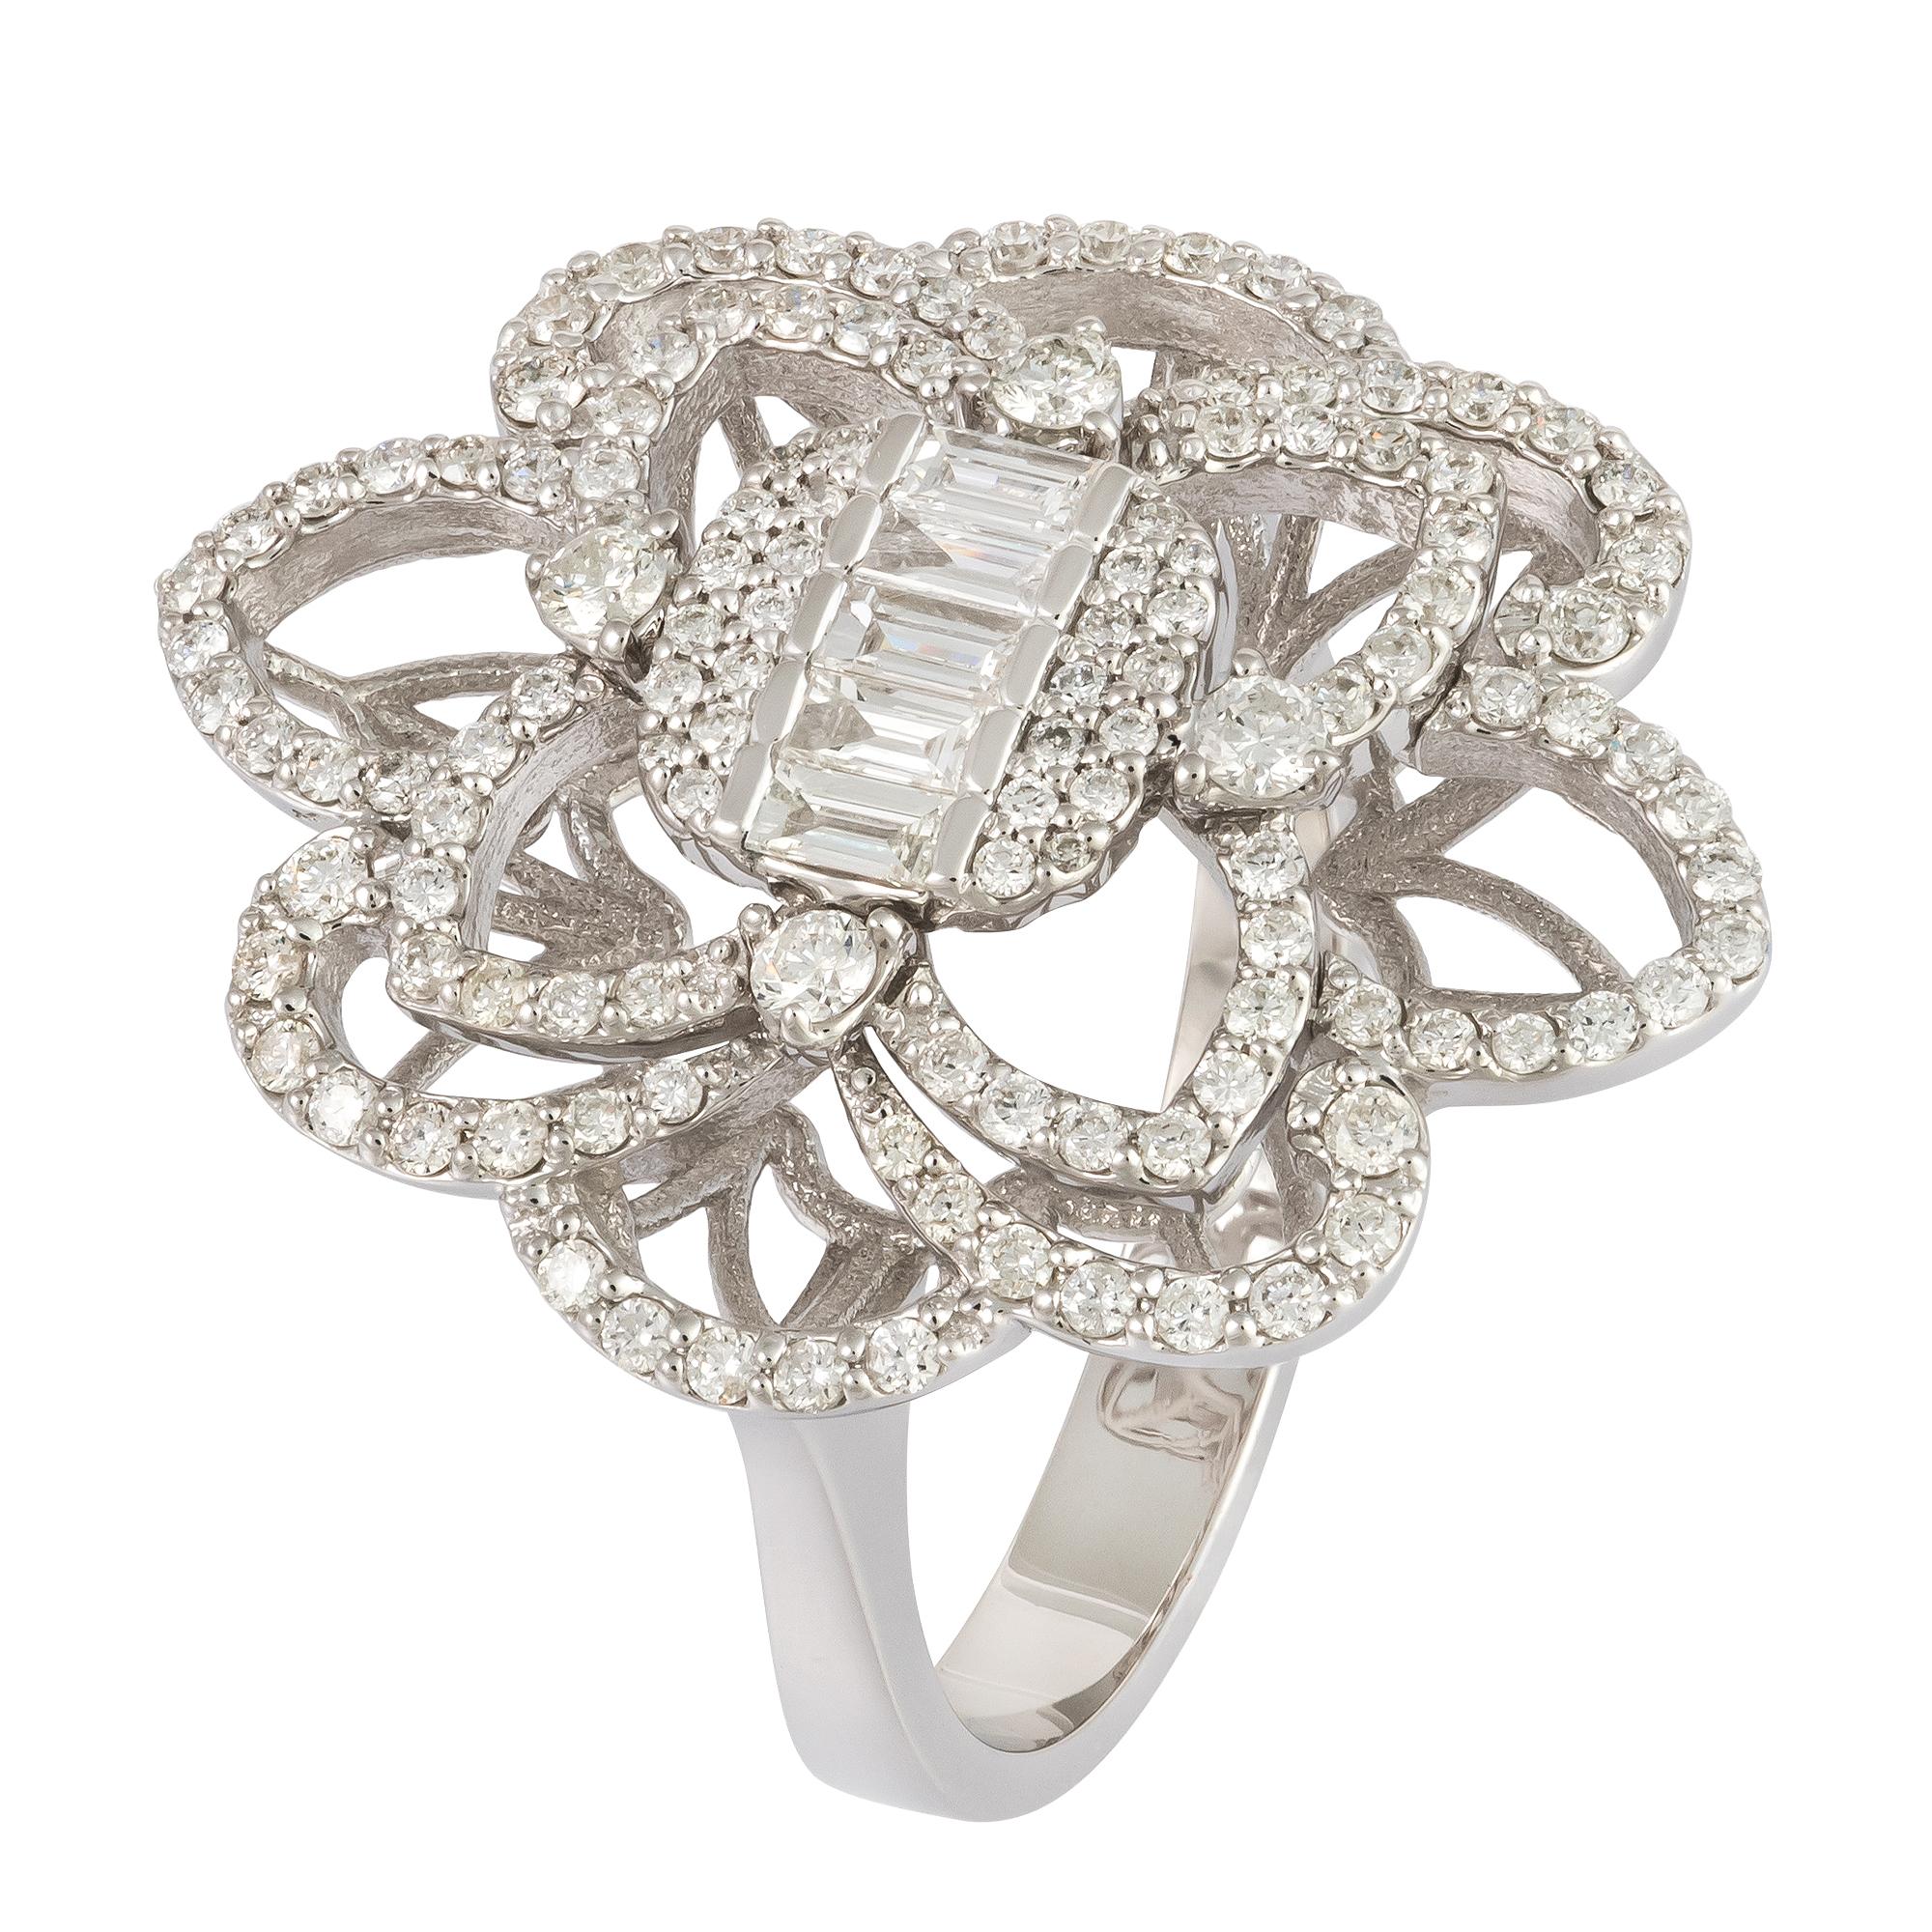 For Sale:  Stunning Flower White 18K Gold White Diamond Ring For Her 2